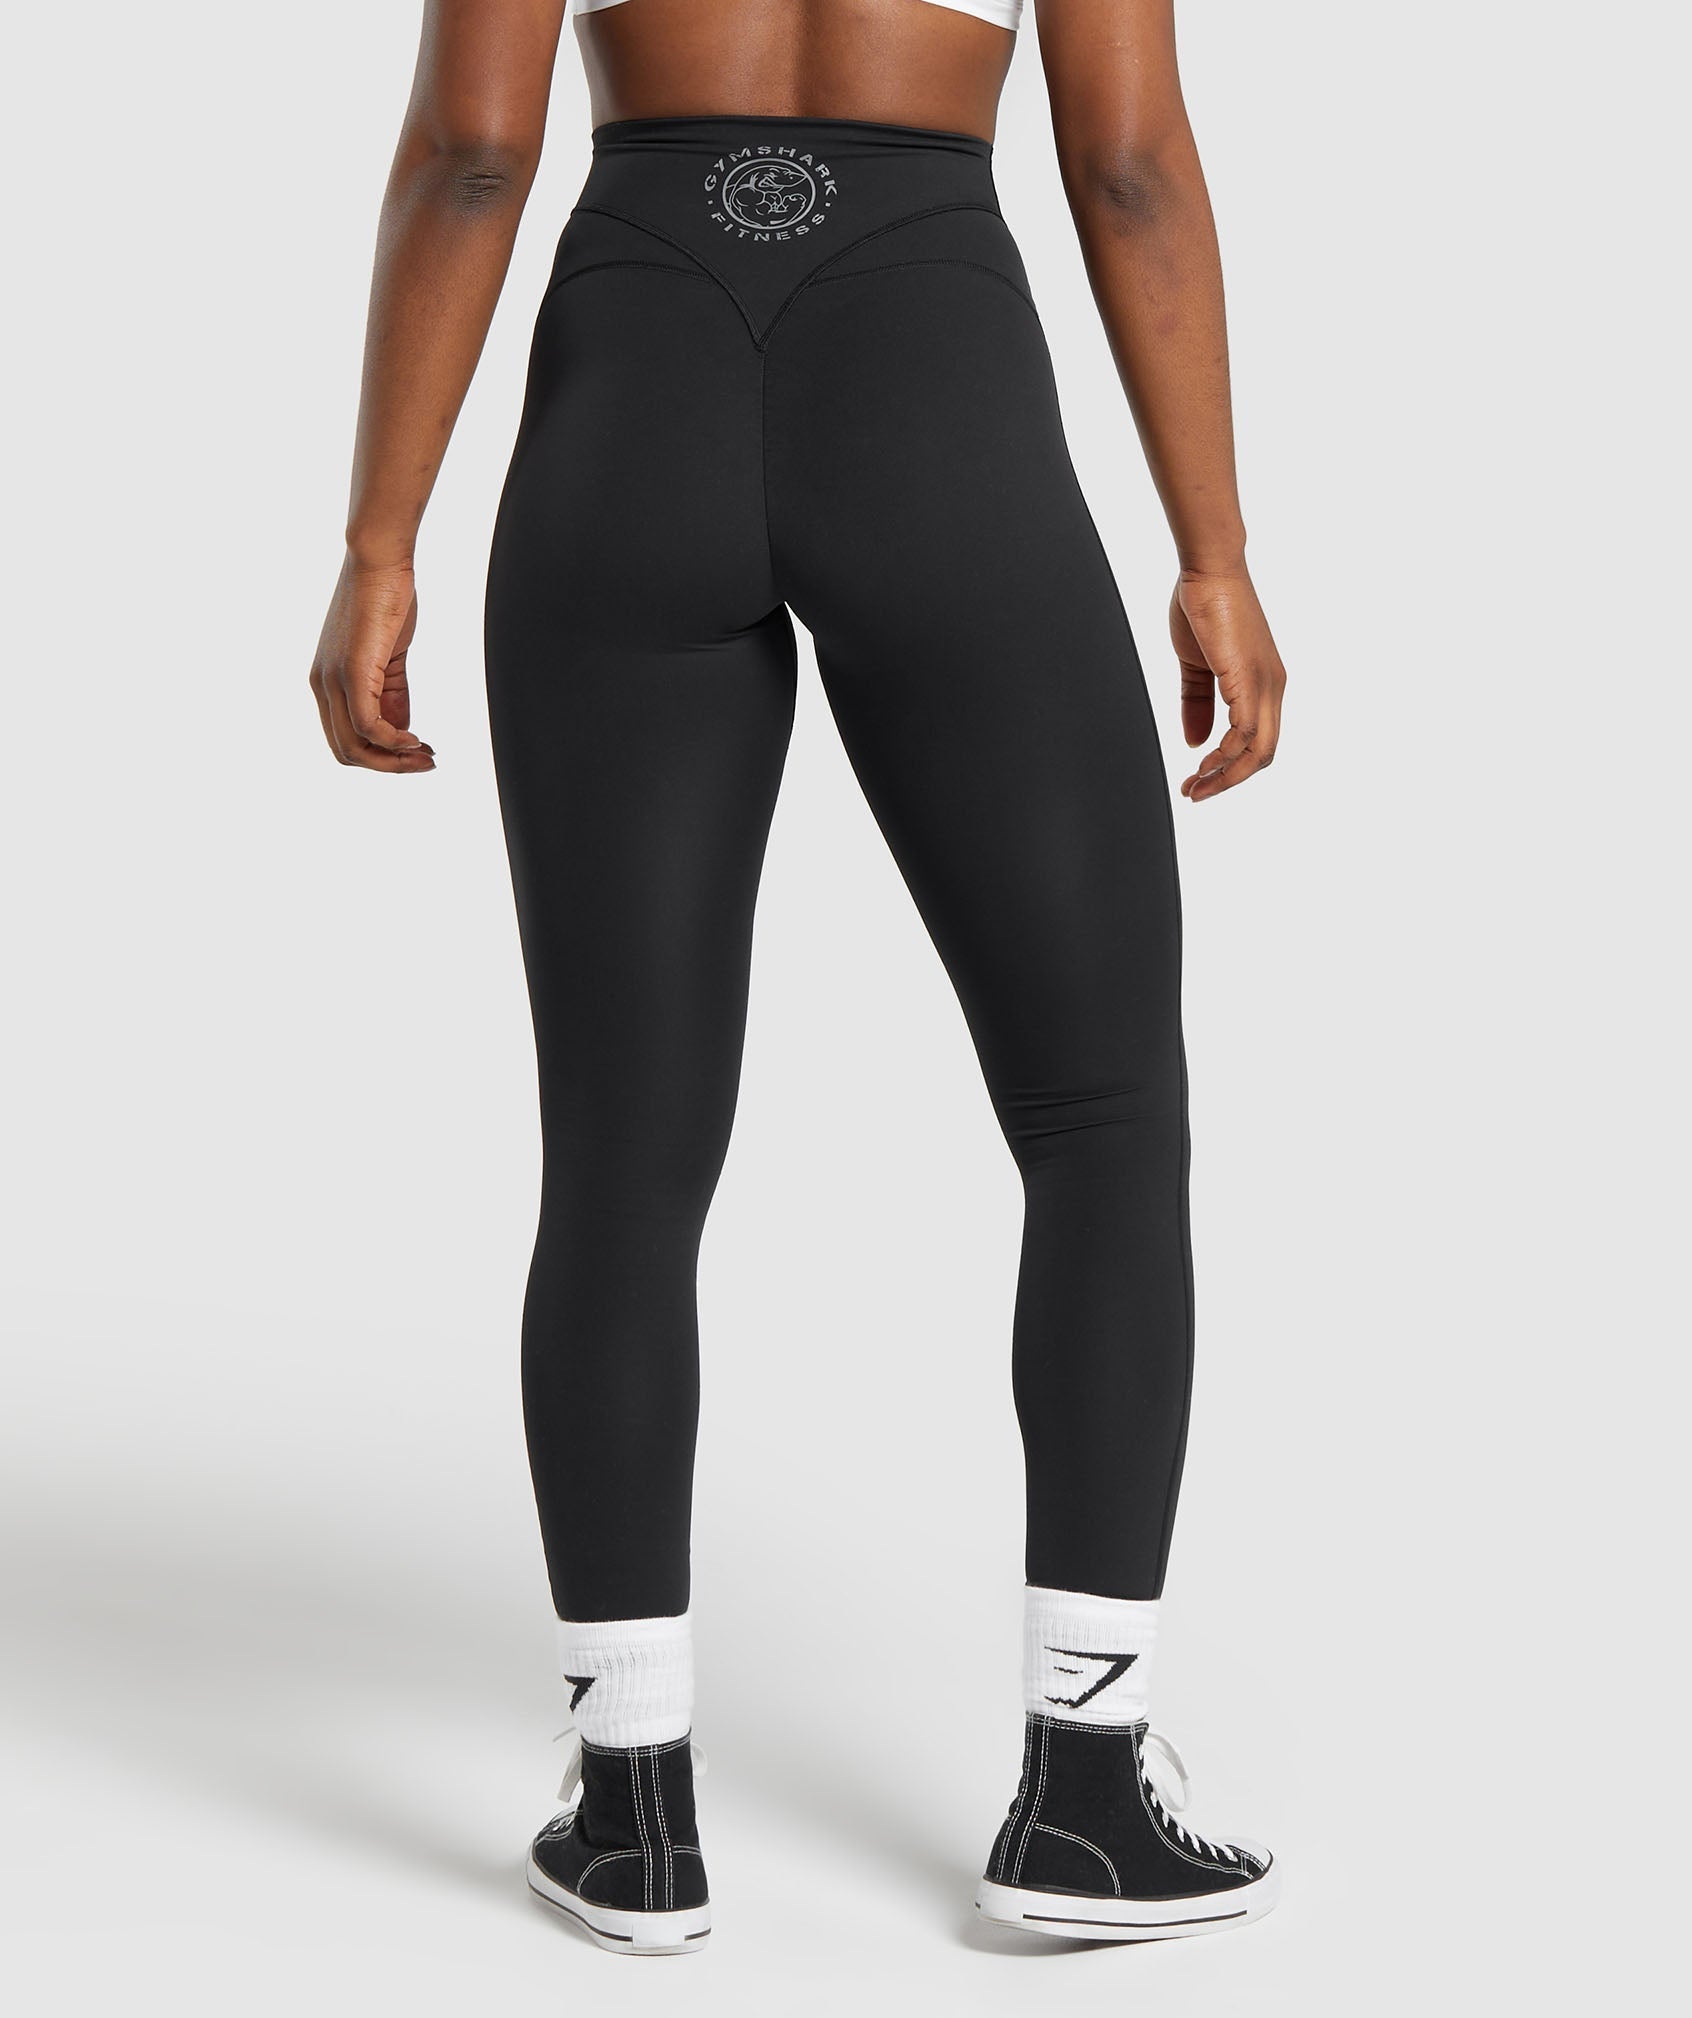 Gymshark Flex High Waisted Leggings - Black  Black leggings, Gym women,  Pants for women